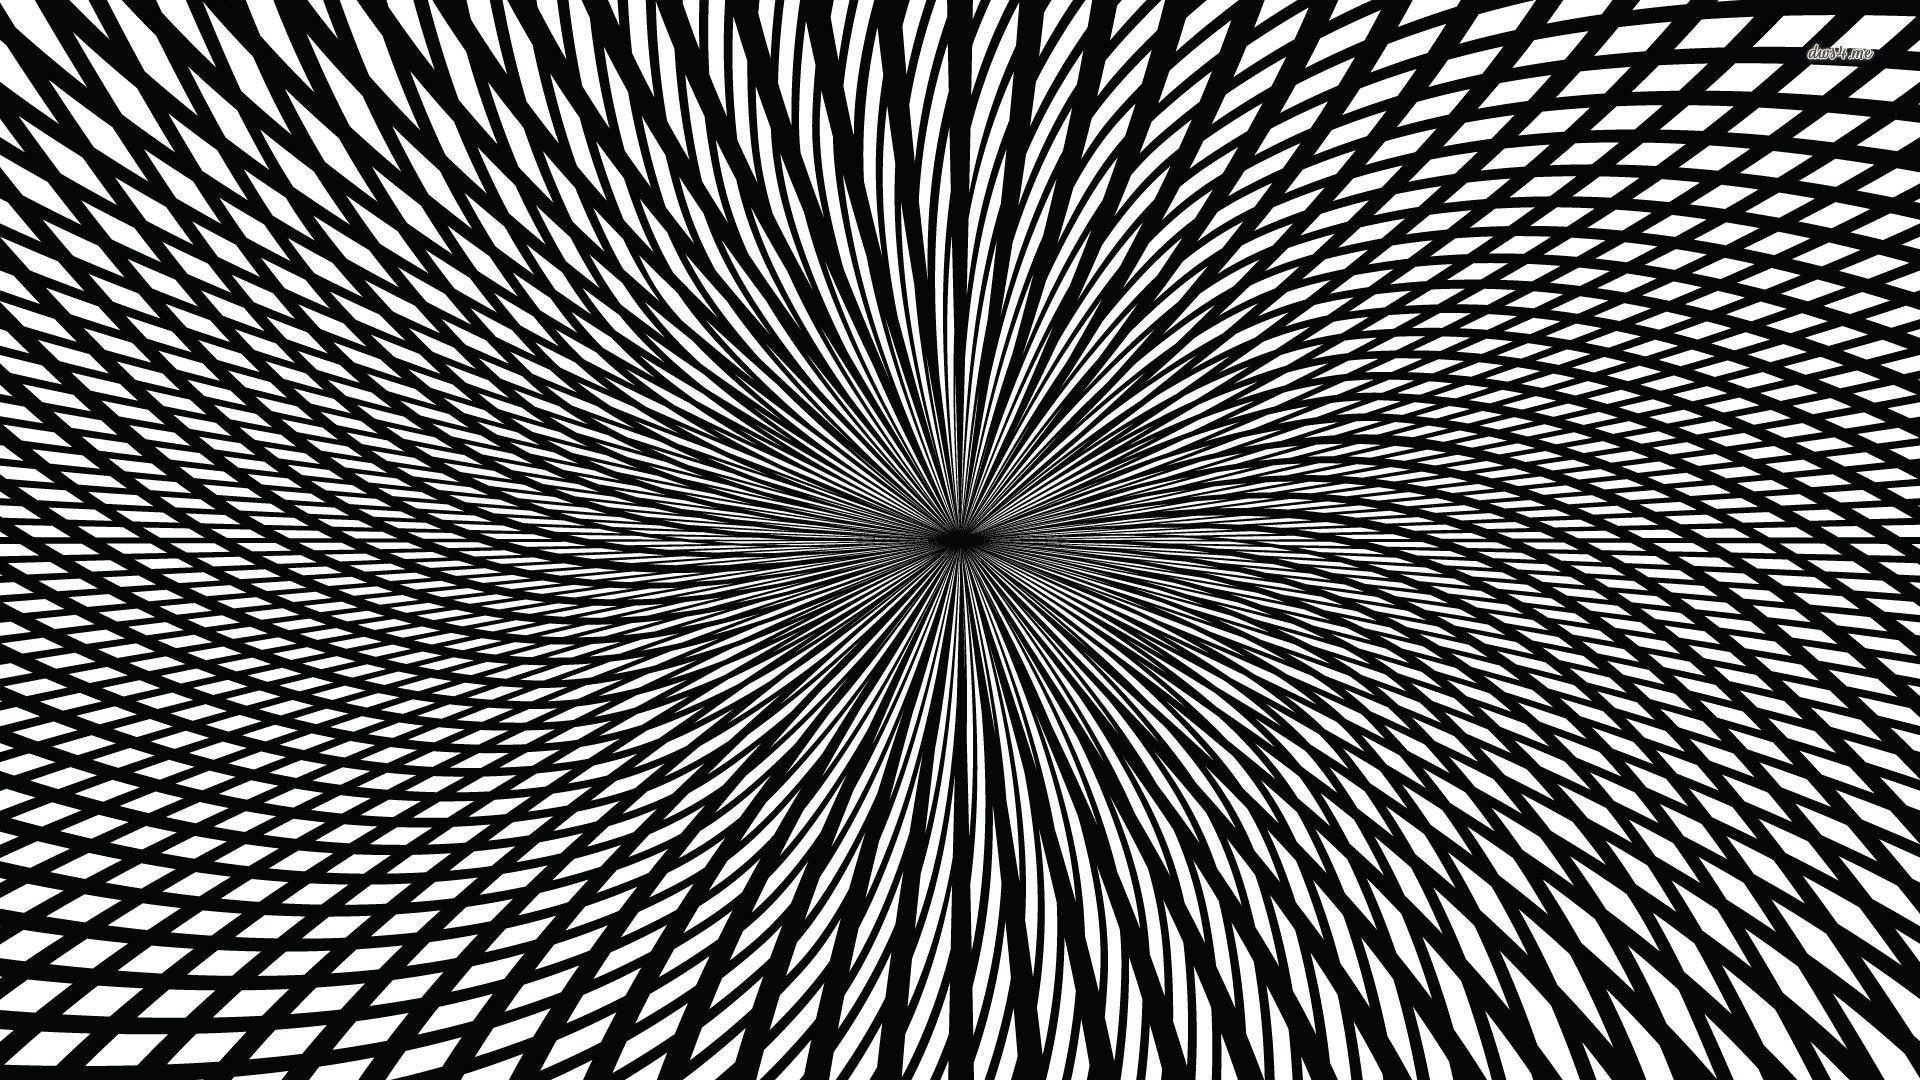 1920x1080 Hình nền ảo ảnh quang học - Hình nền trừu tượng - Mắt